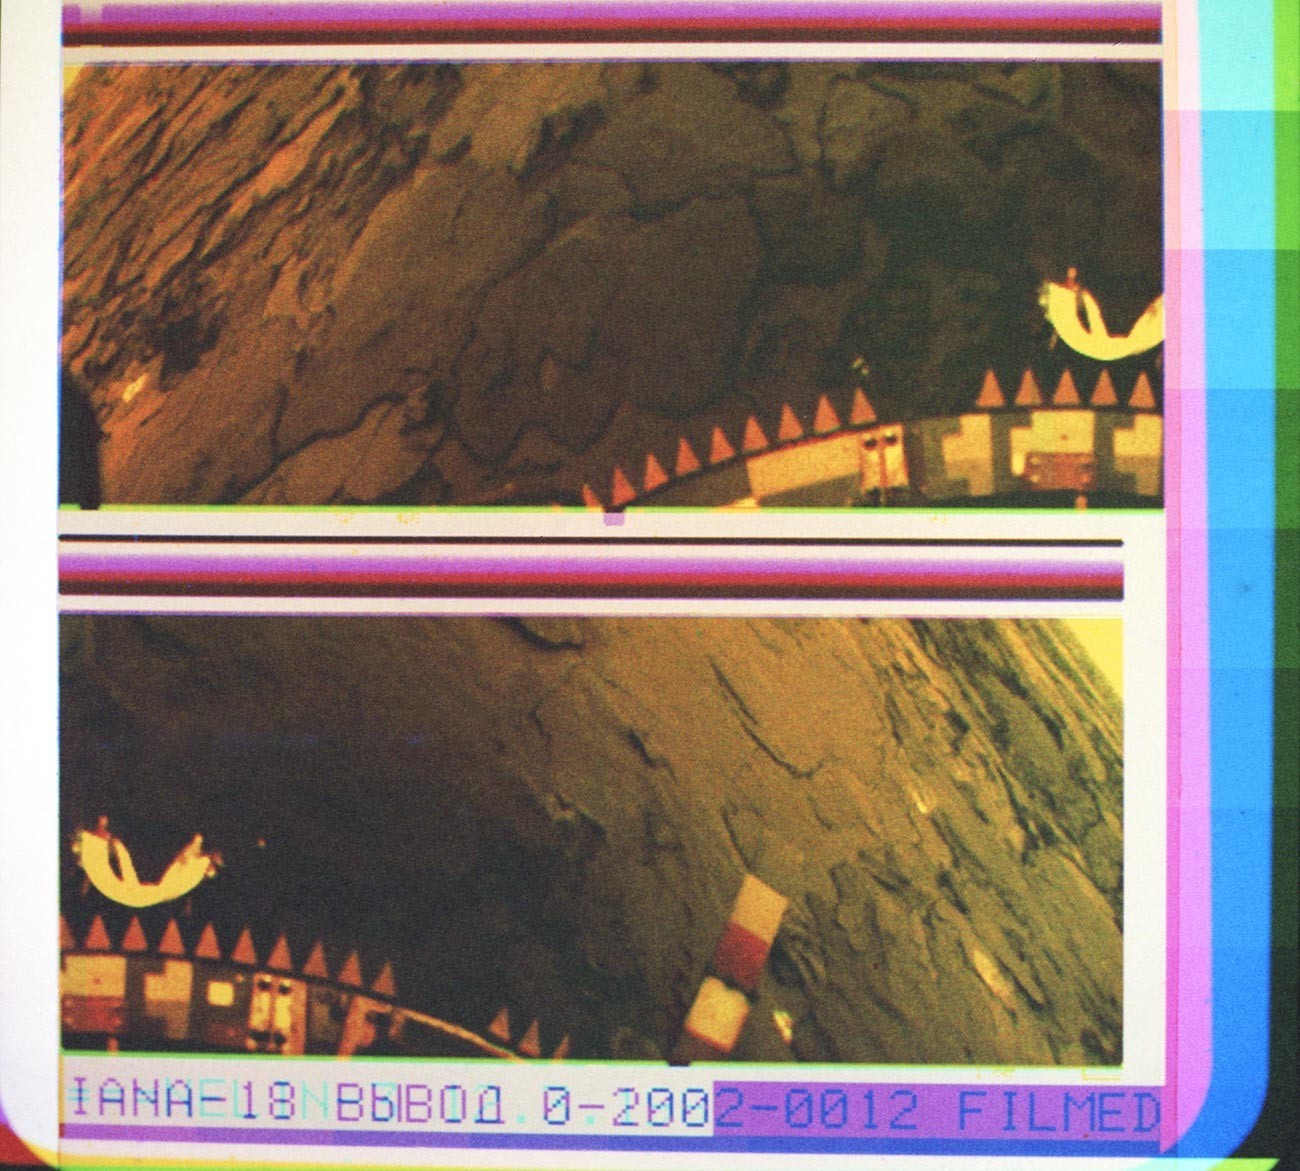 Панорамска колор фотографија од површината на Венера, испратена од сондата „Венера 14“. Добиена со синтеза на три снимки емитувани низ колор филтри. Обработка на фотографијата: Центар за далечна космичка врска и Институт за проблеми на емитување податоци при Академијата на науките на СССР. 